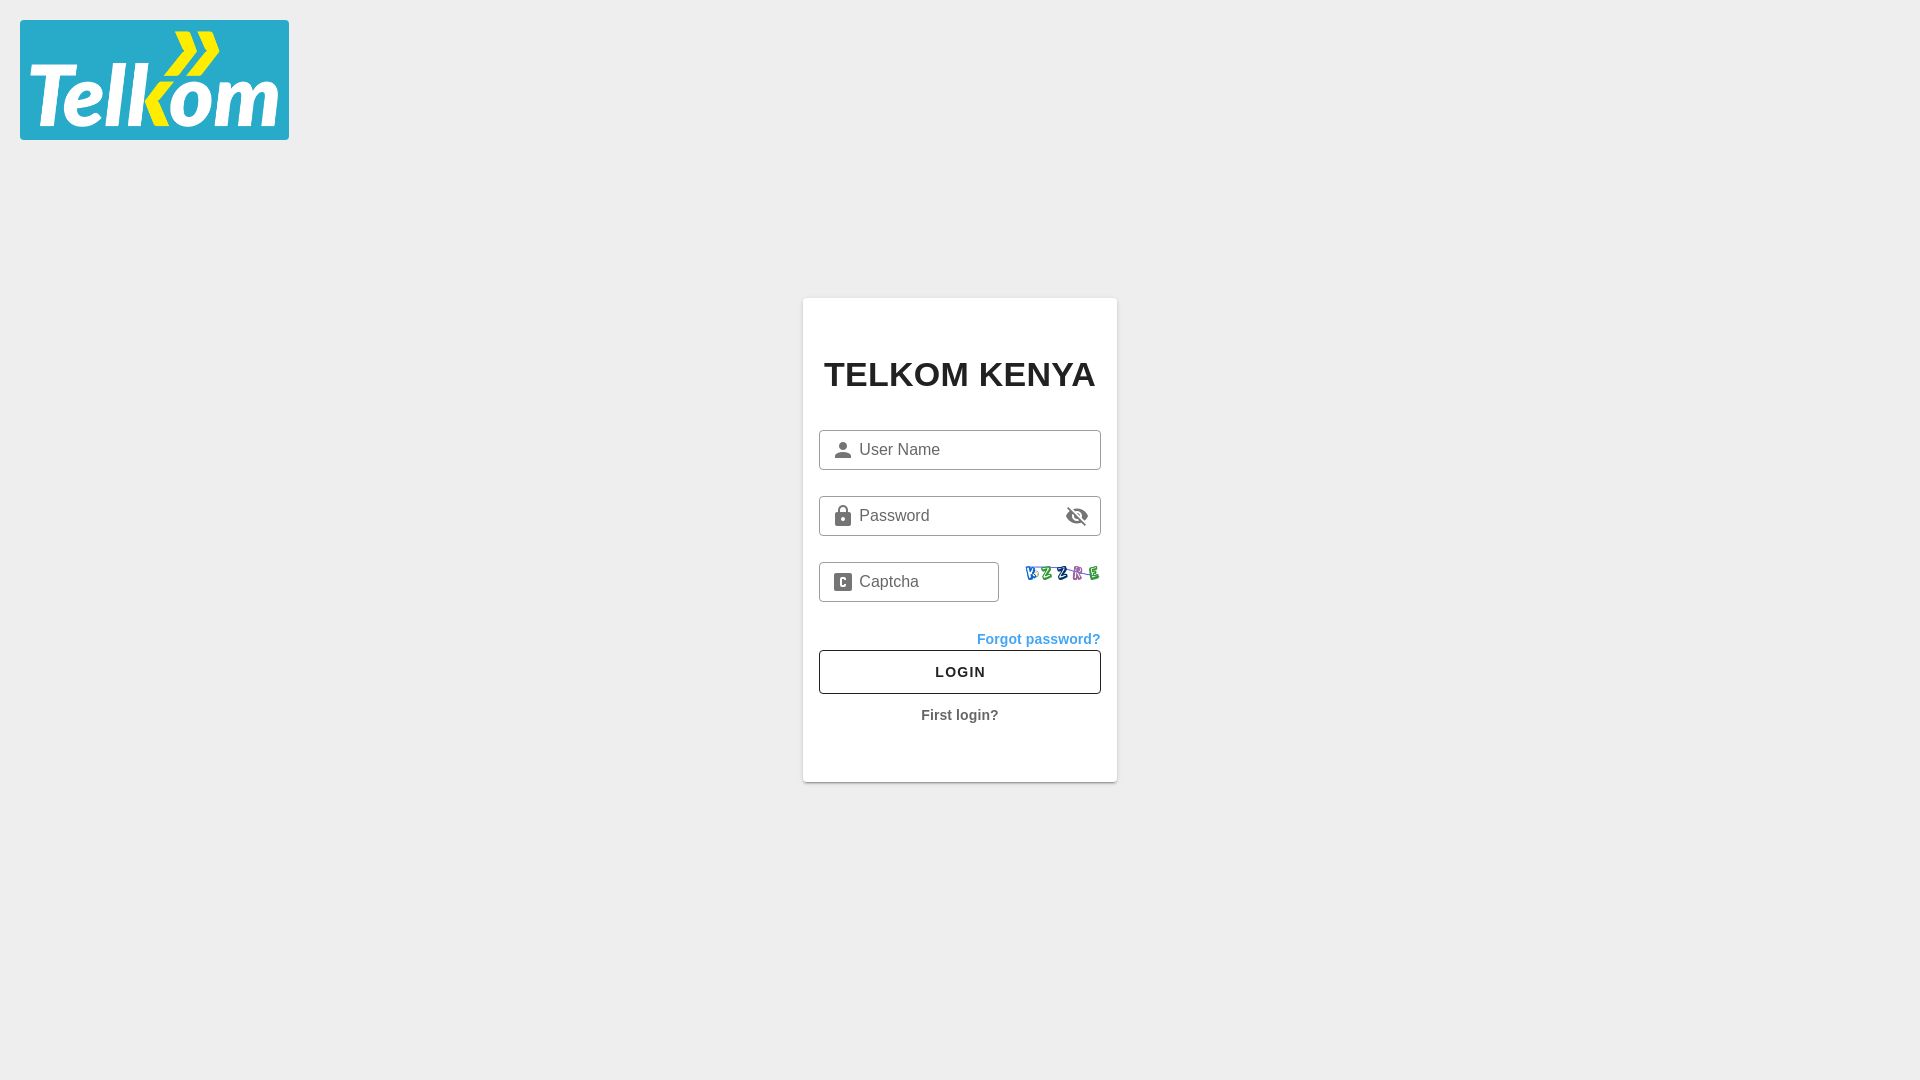 Website status selfcare.telkom.co.ke is   ONLINE